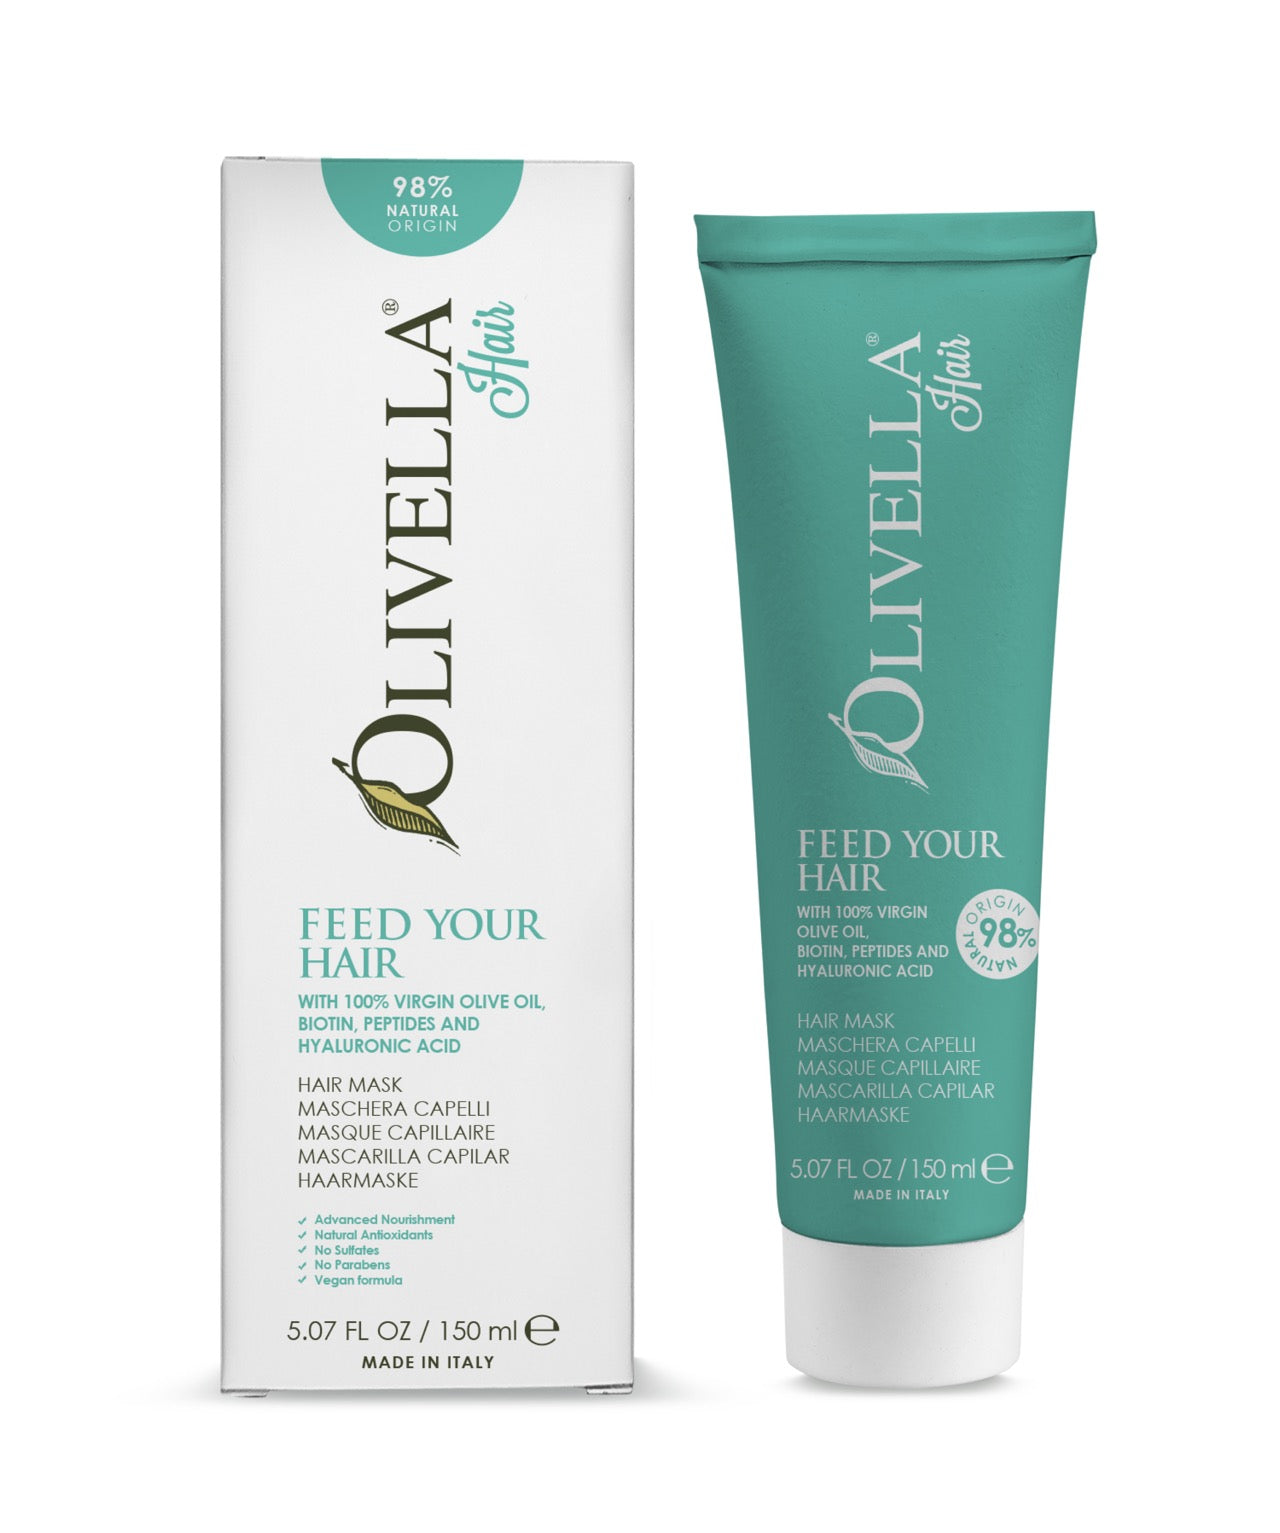 Olive Oil Shower & Hair Care Set - Olivella Europe